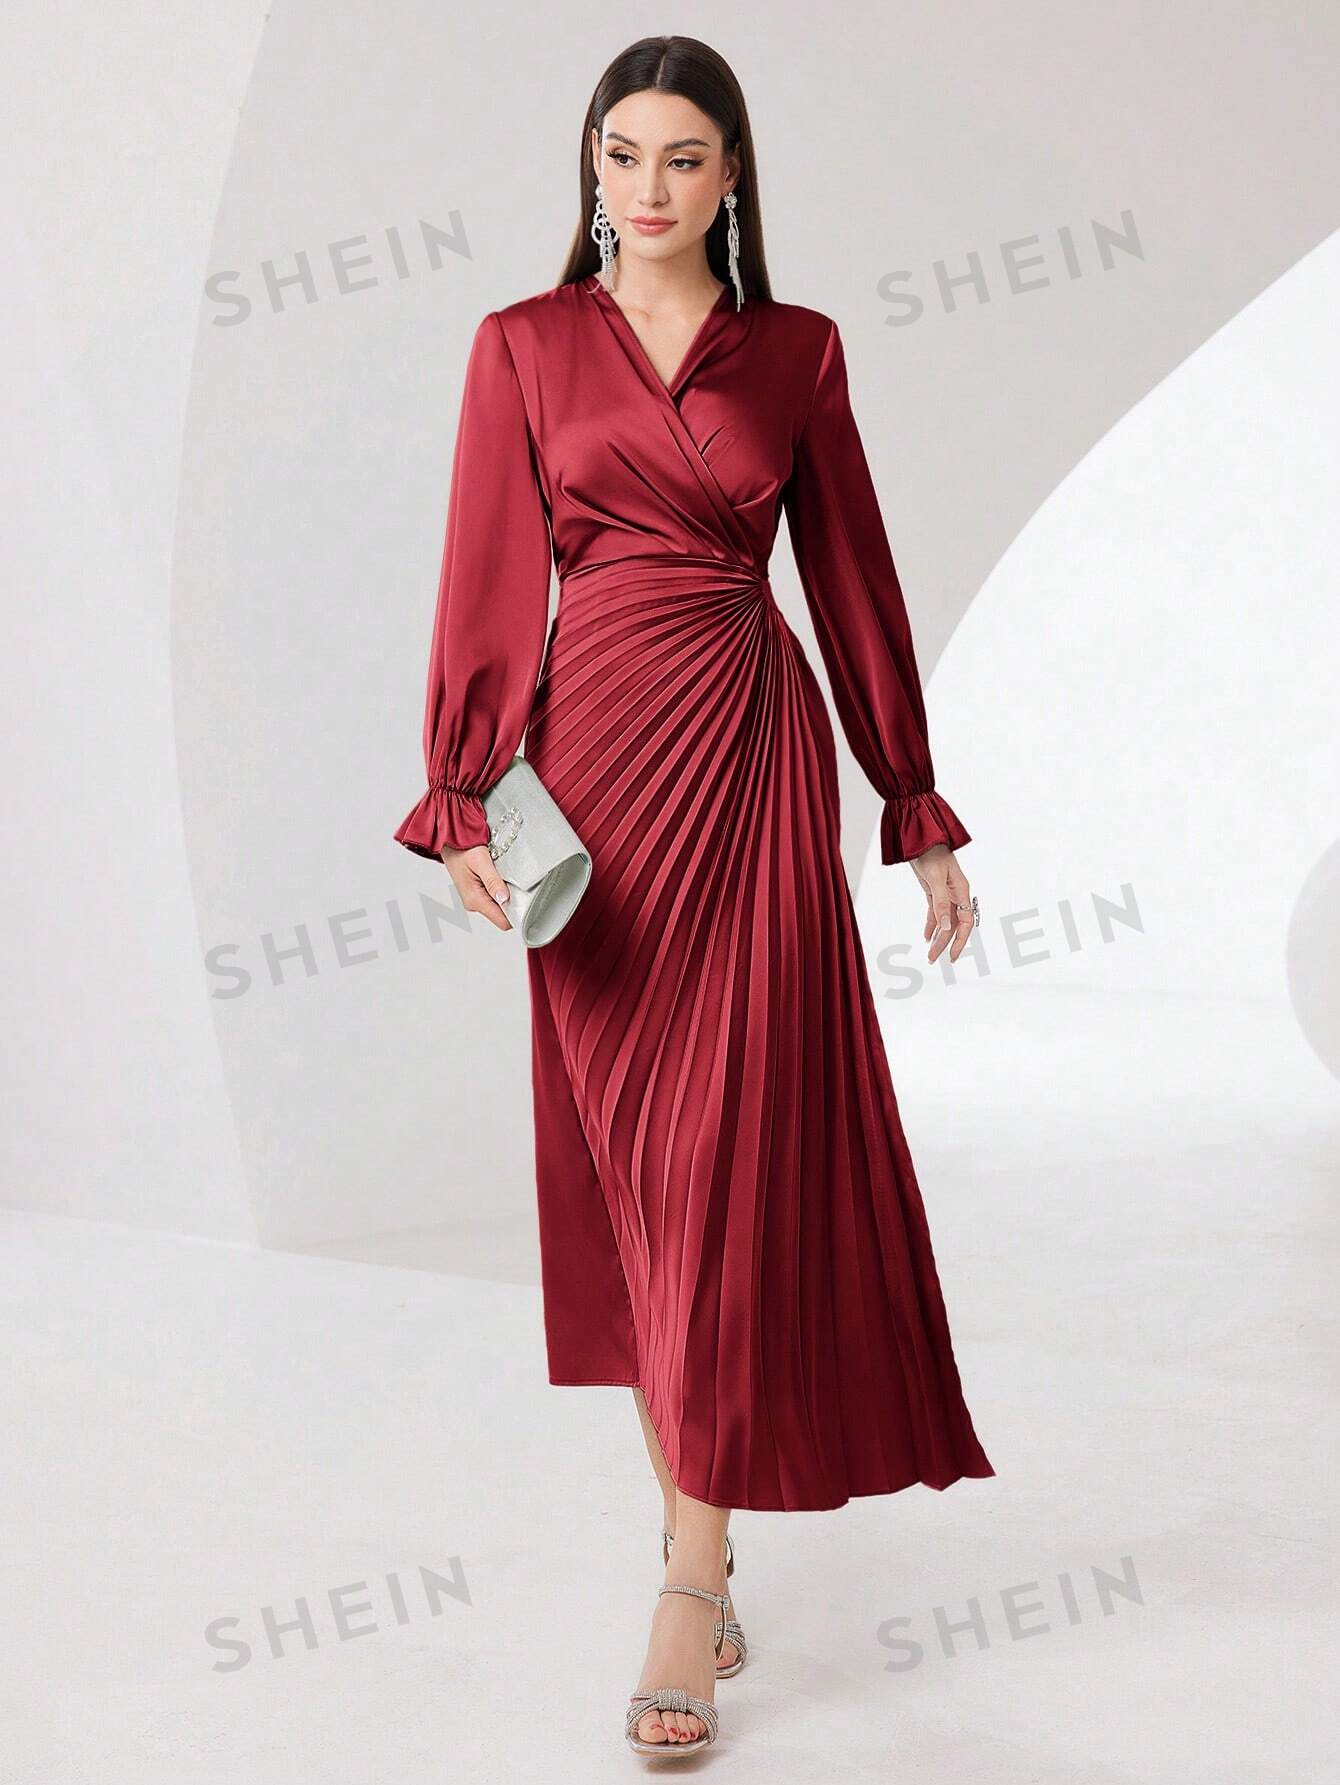 SHEIN Modely женское однотонное плиссированное платье с рюшами и рукавами, красный shein modely женское арабское платье в стиле пэчворк из тканой ленты с бахромой и длинными рукавами пыльный фиолетовый